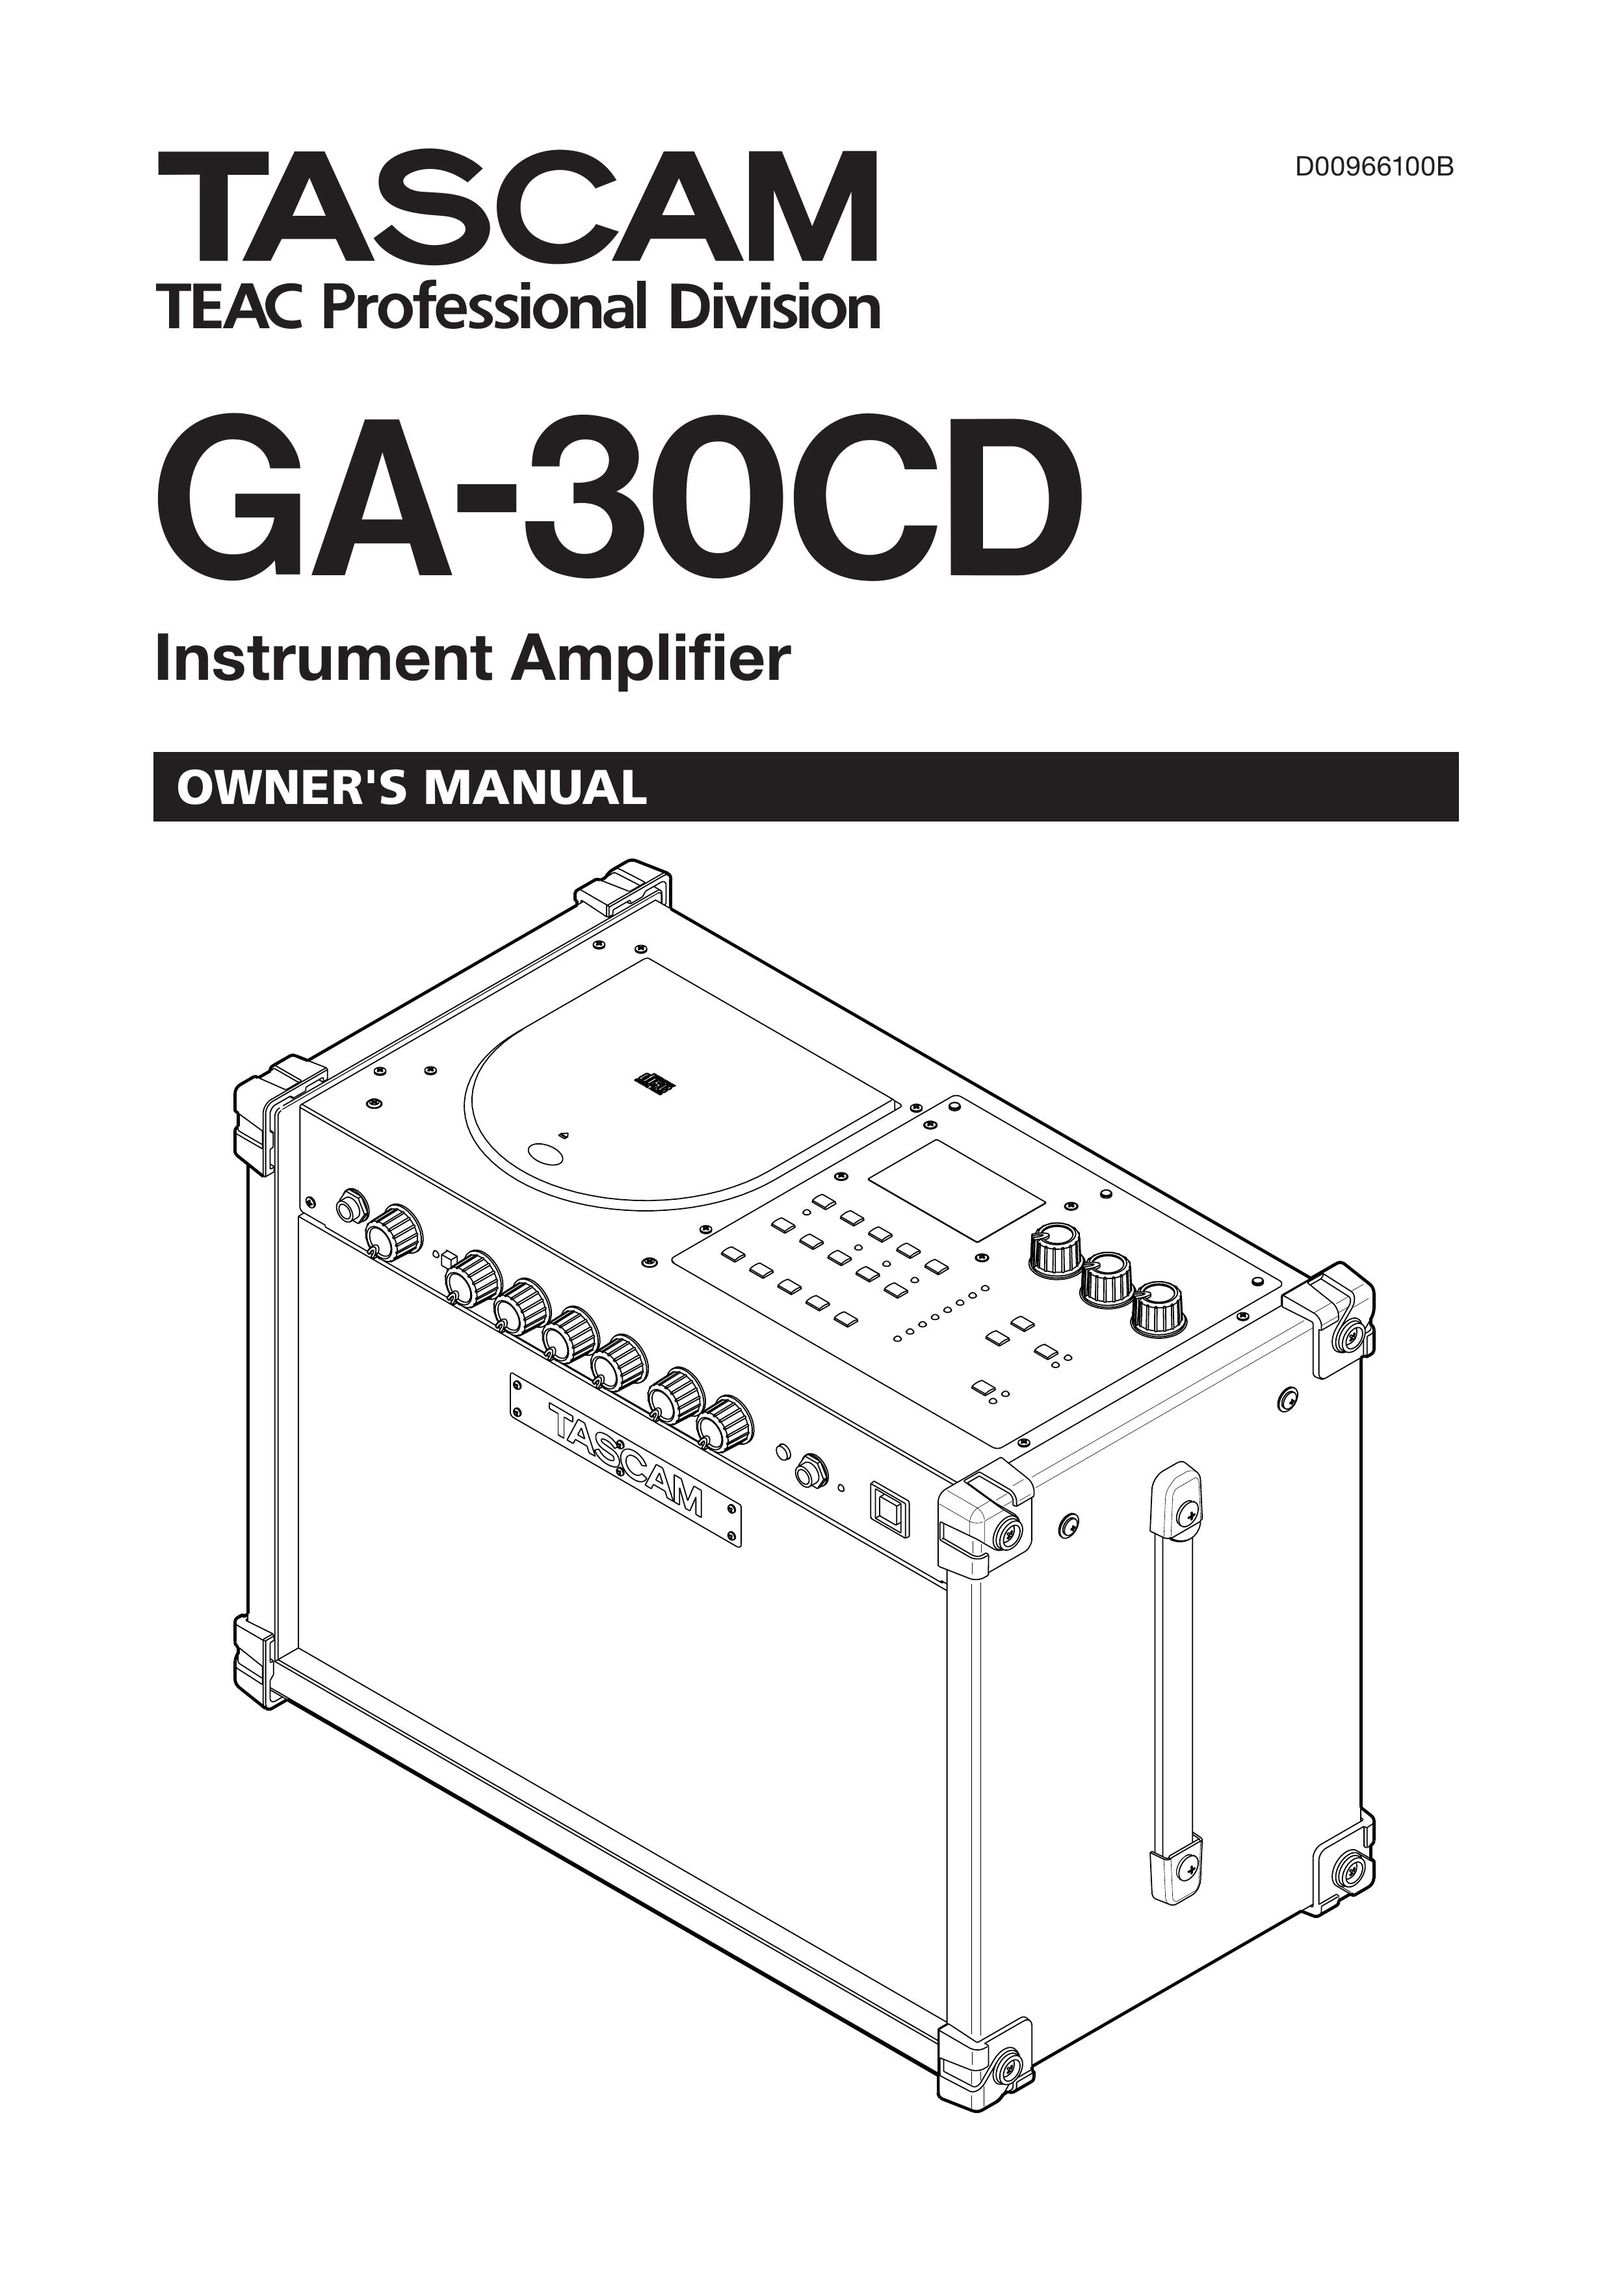 Tascam GA-30CD Stereo Amplifier User Manual